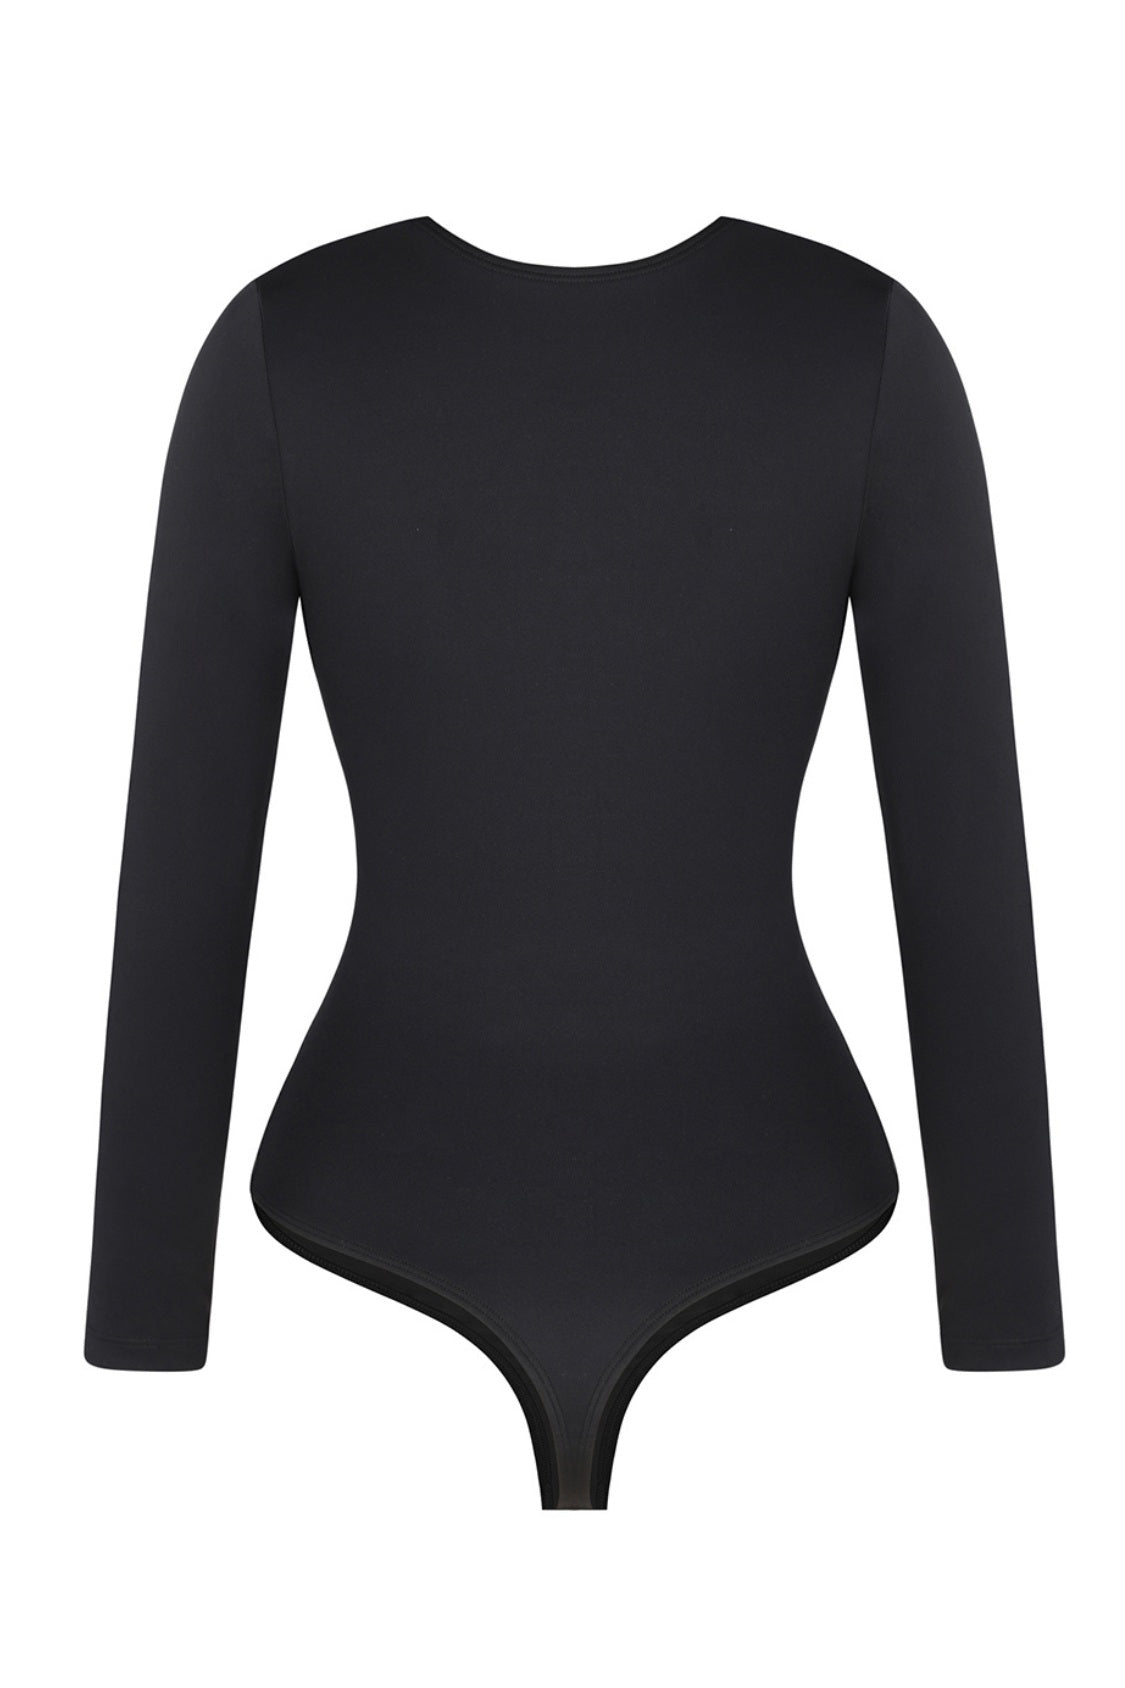 Tiffany Shaping Bodysuit - Black Contour Clothing